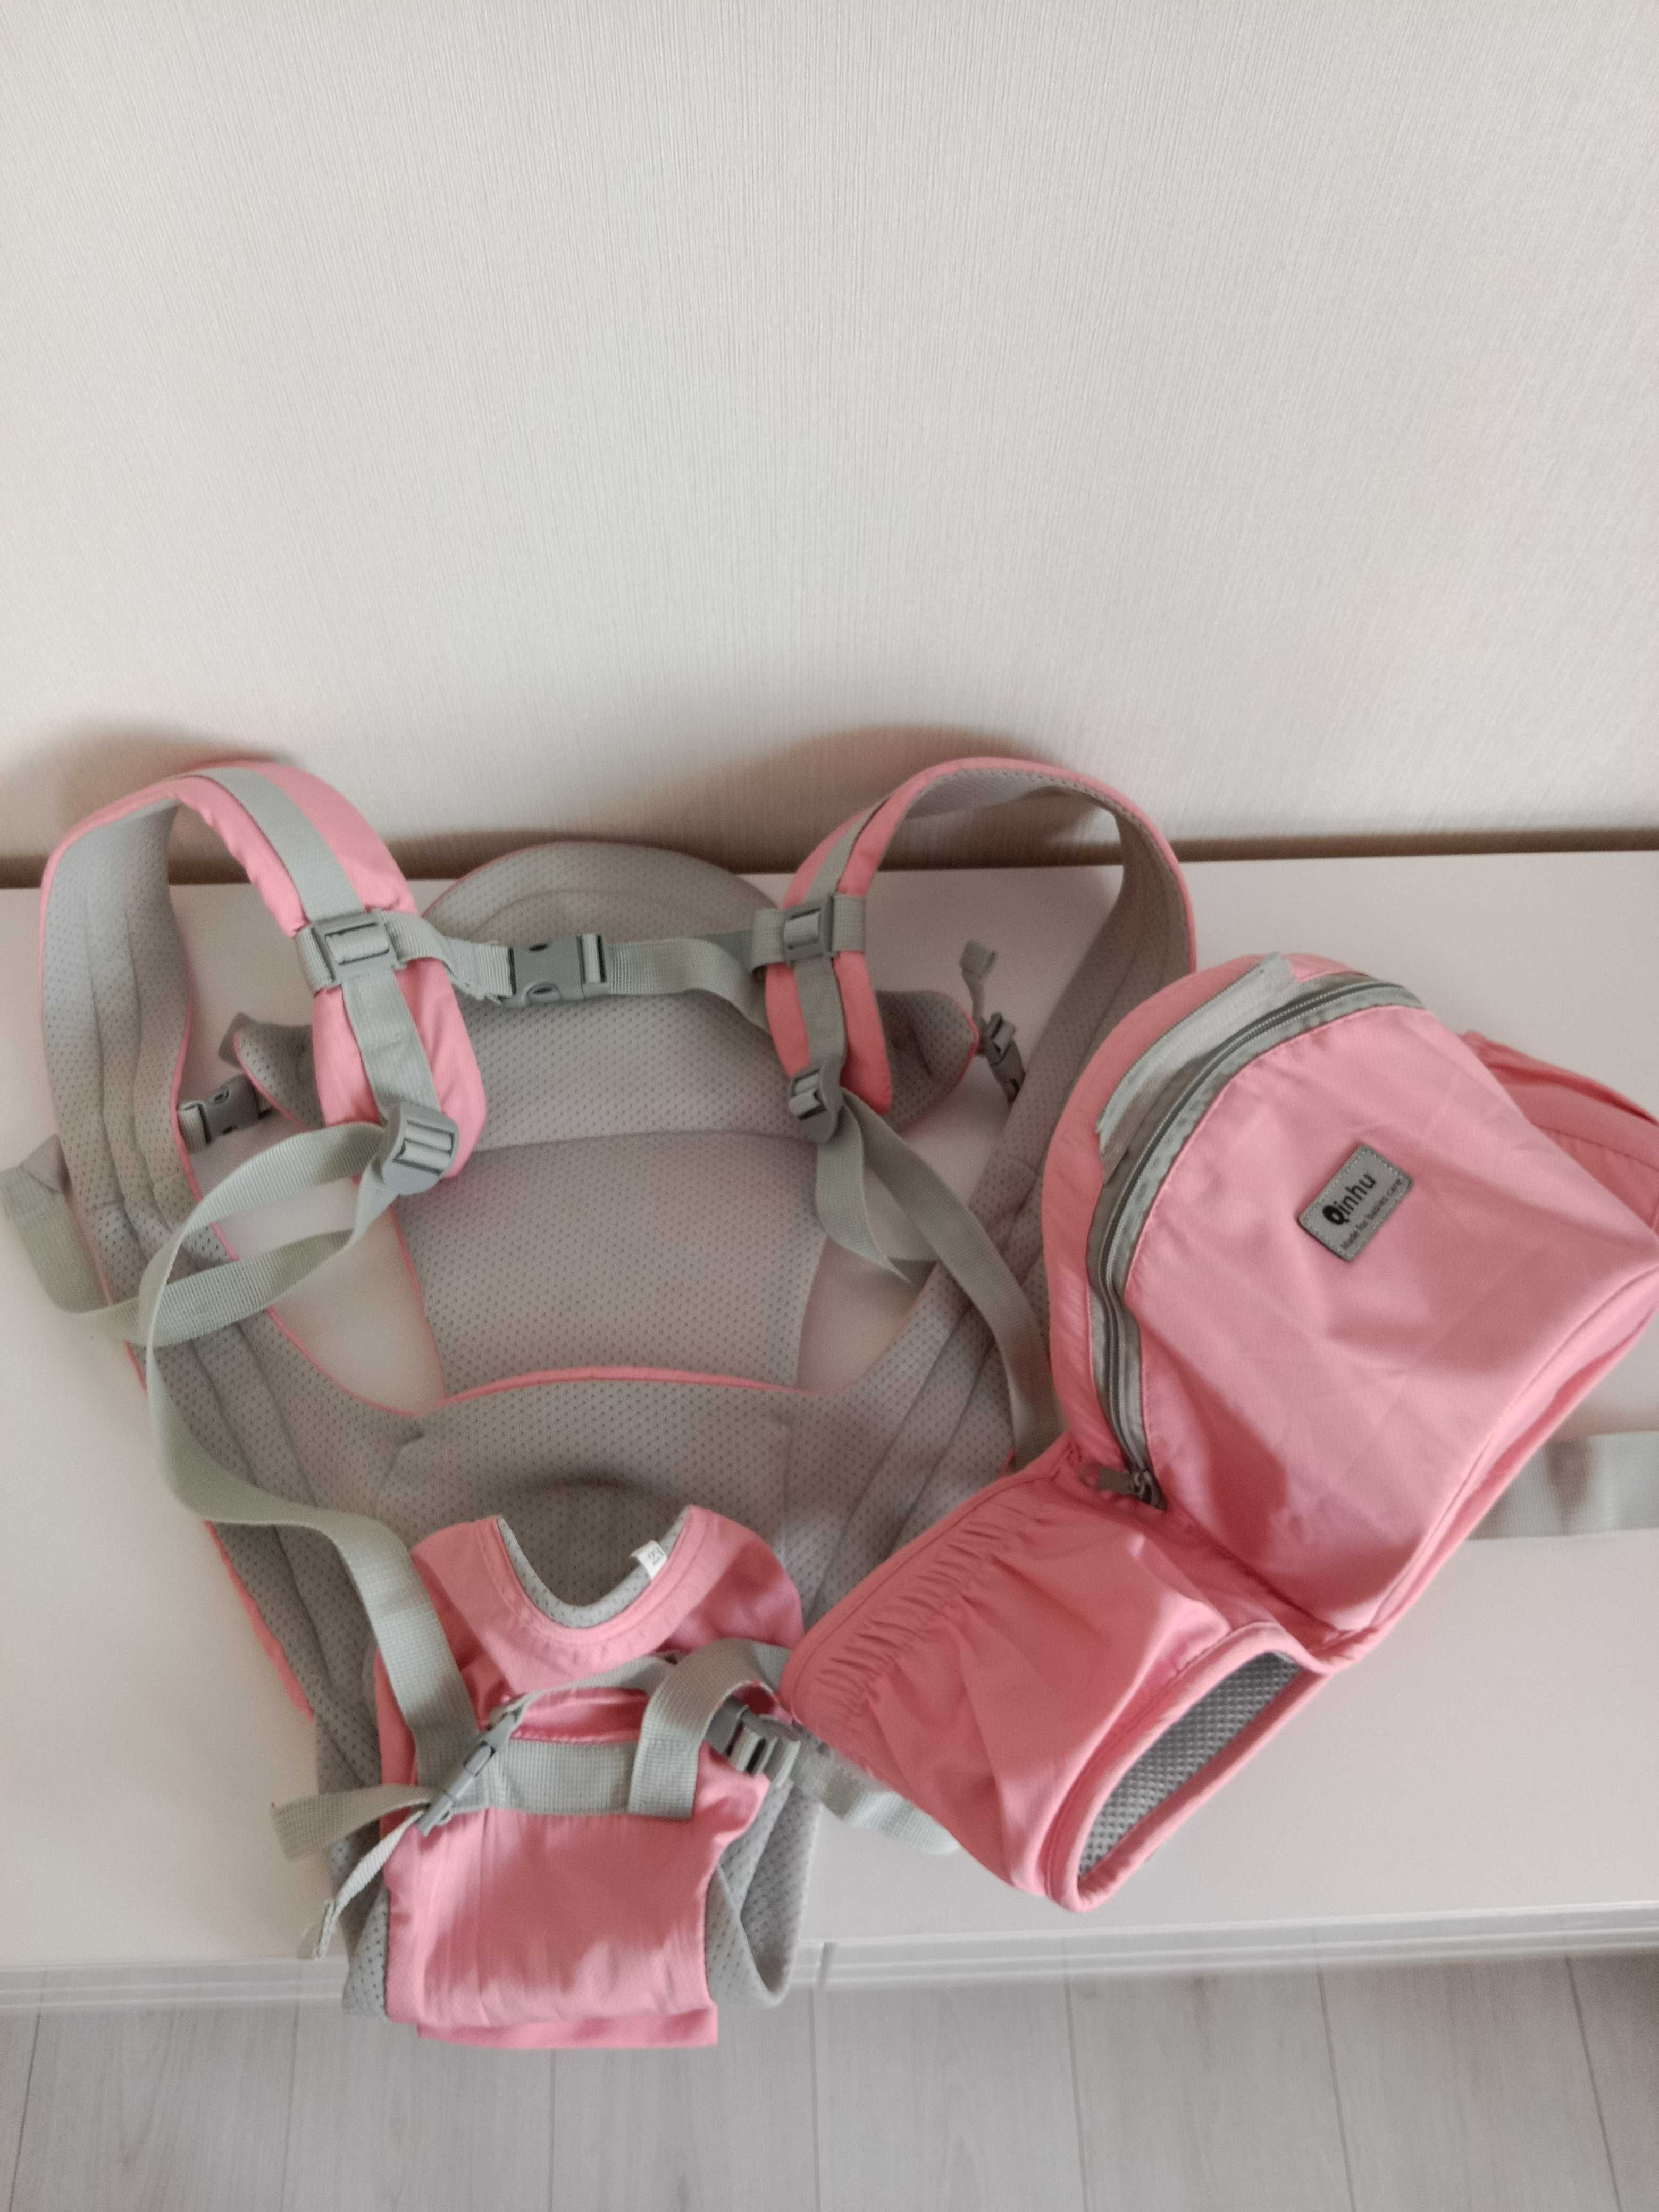 Хипсит эрго рюкзак Qinhu розовый переноска для малыша